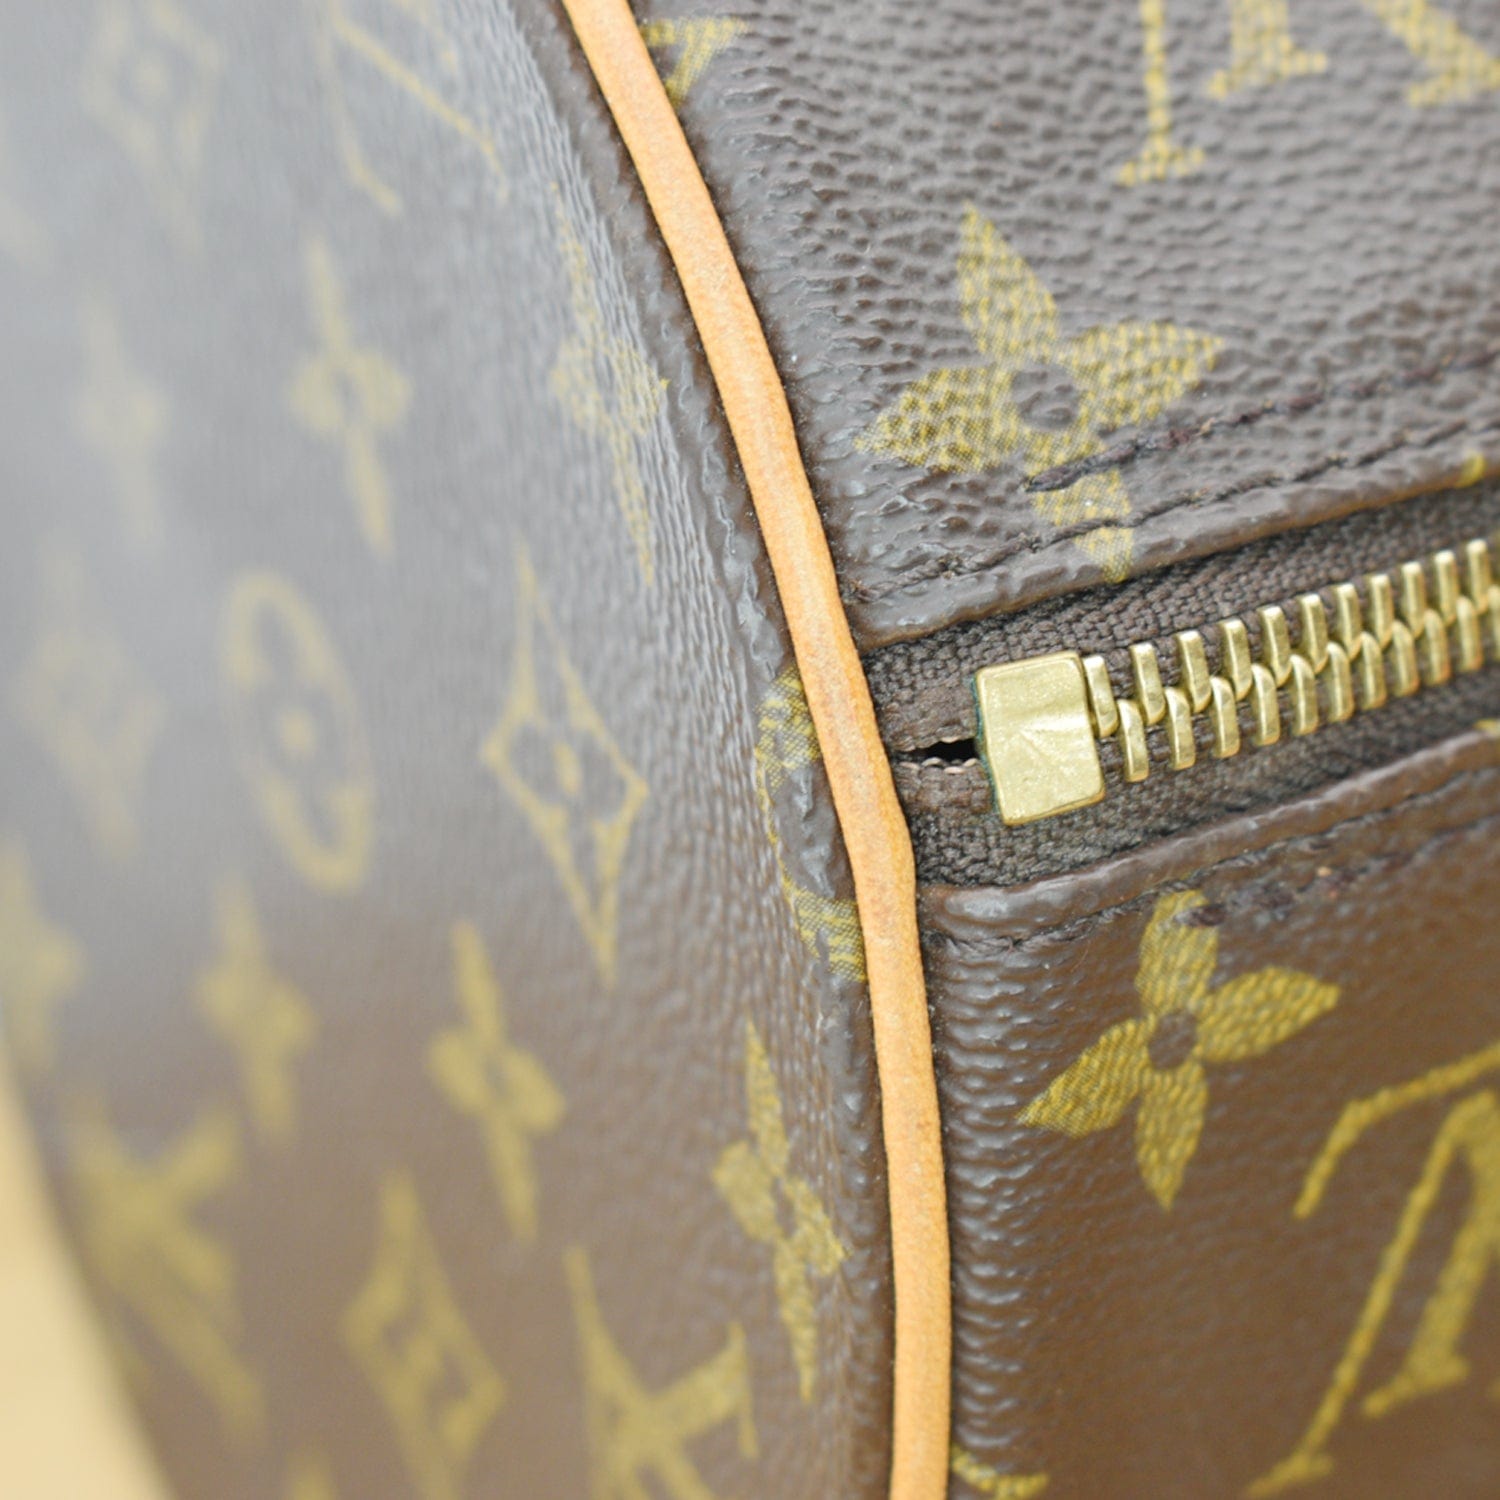 Papillon cloth handbag Louis Vuitton Brown in Cloth - 14864829